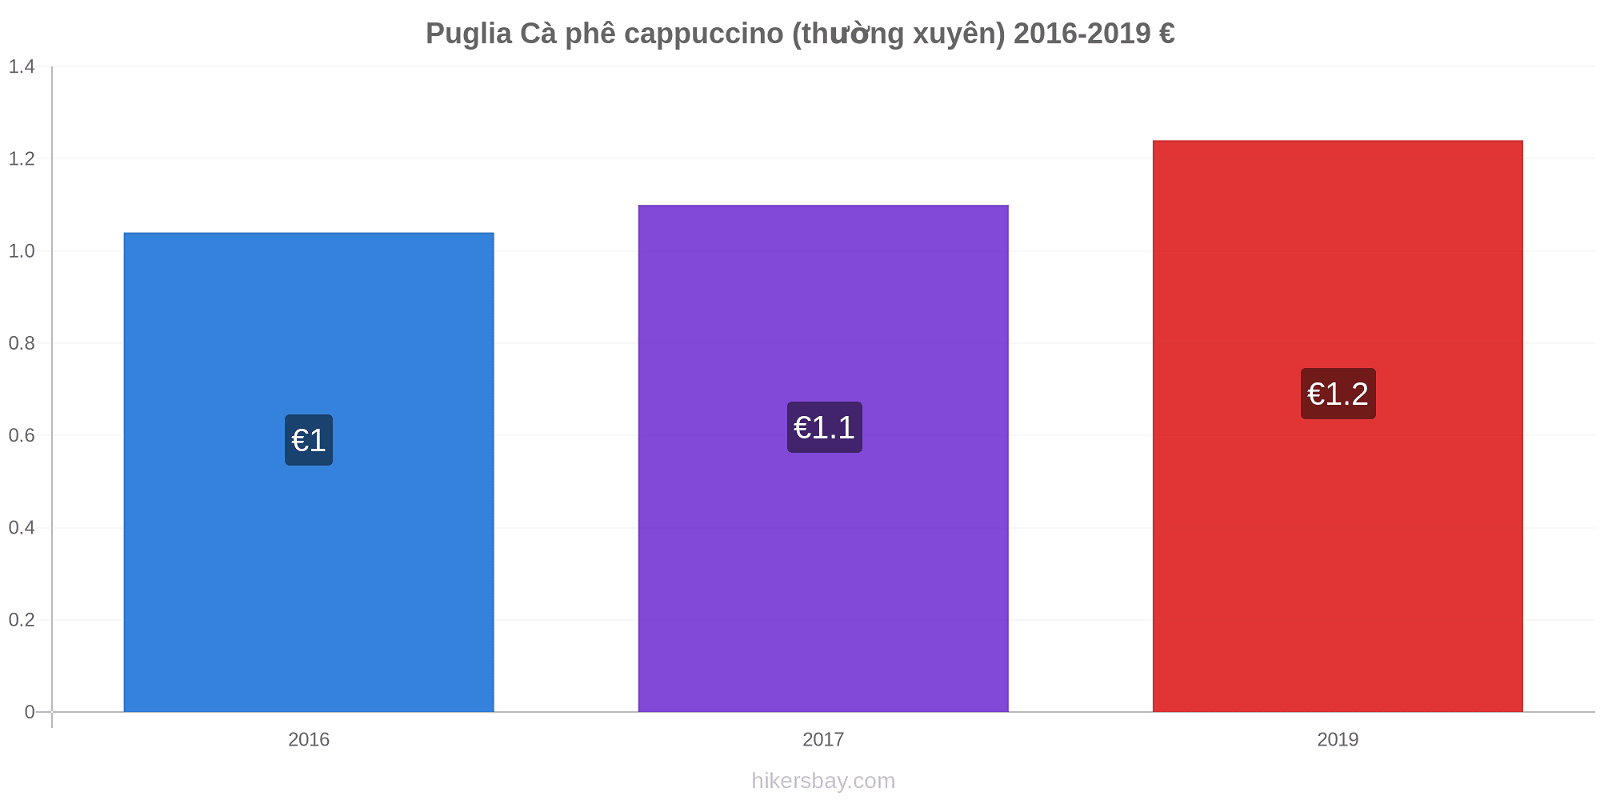 Puglia thay đổi giá Cà phê cappuccino (thường xuyên) hikersbay.com